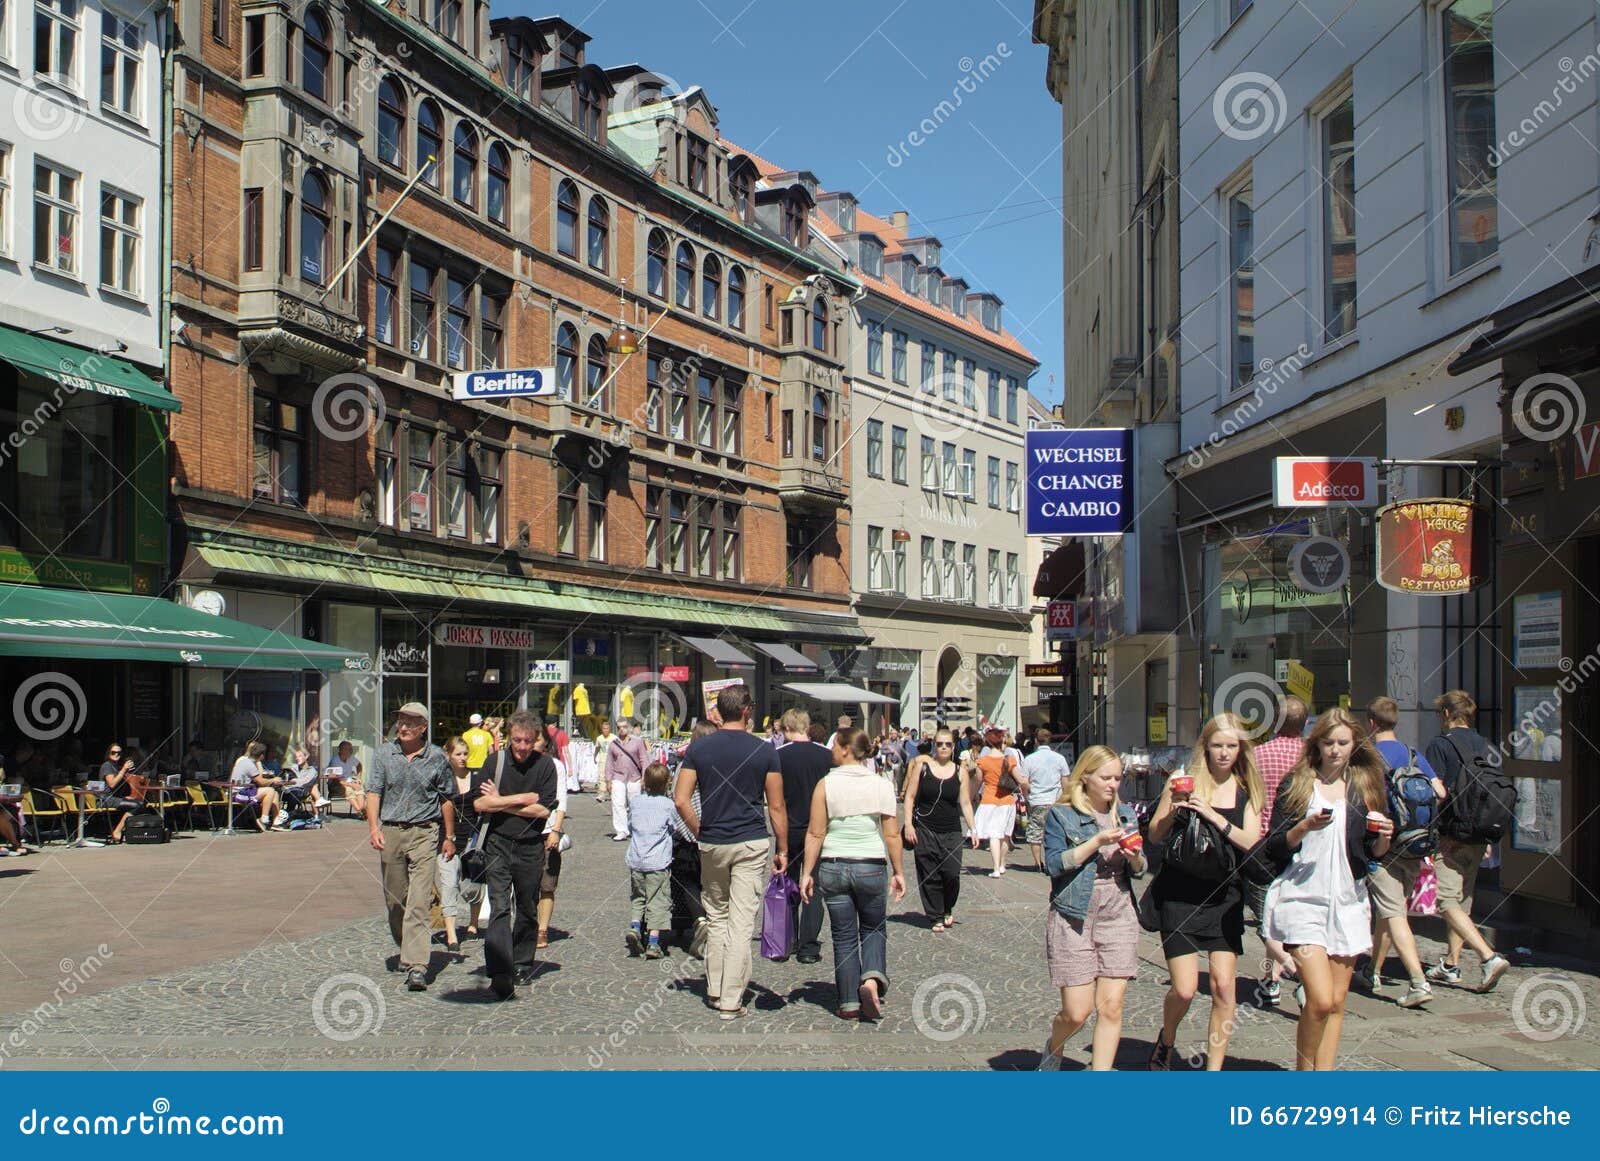 Denmark, Copenhagen editorial stock image. Image of outside - 66729914